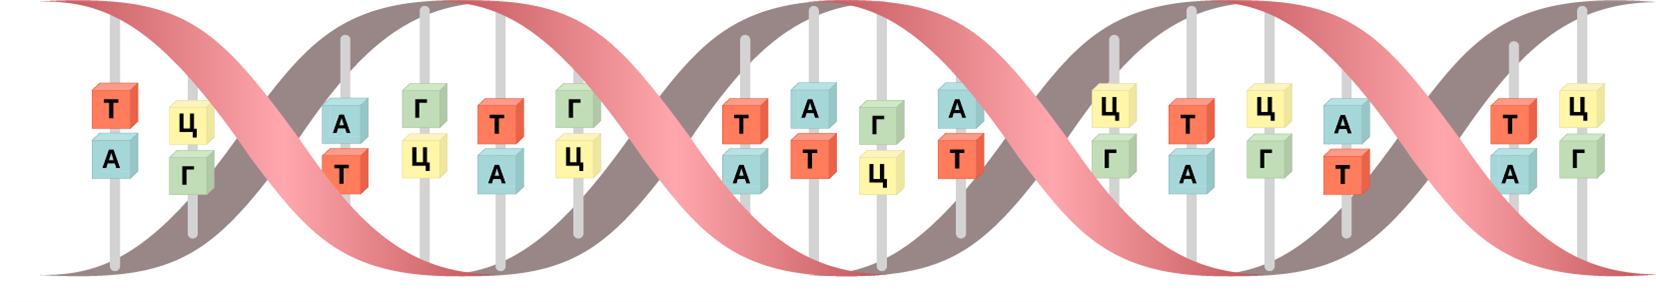 Третичная структура ДНК. Строение ДНК презентация. Триточны структуру ДНК. Атгц расшифровка.